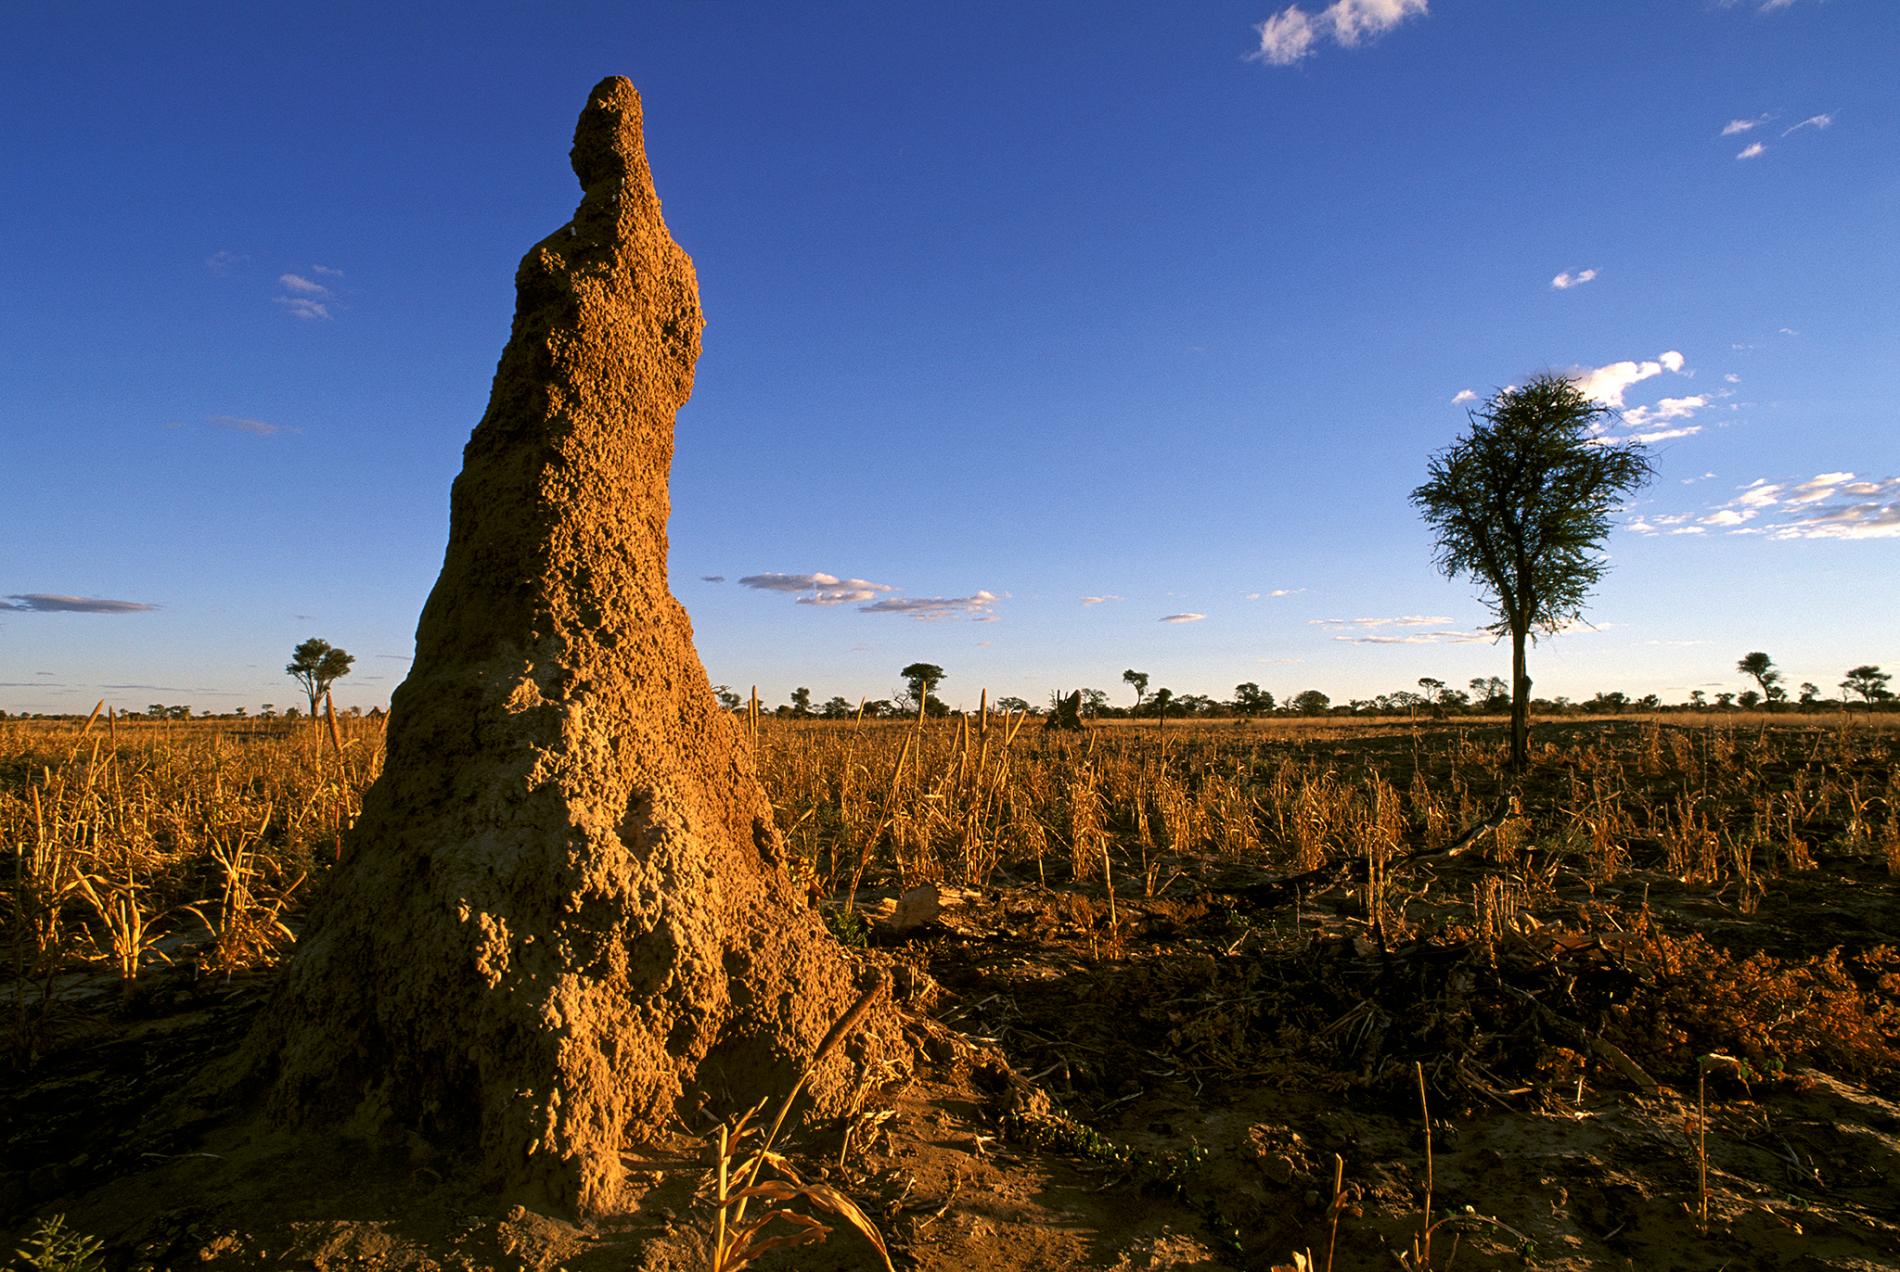 Termite Hill